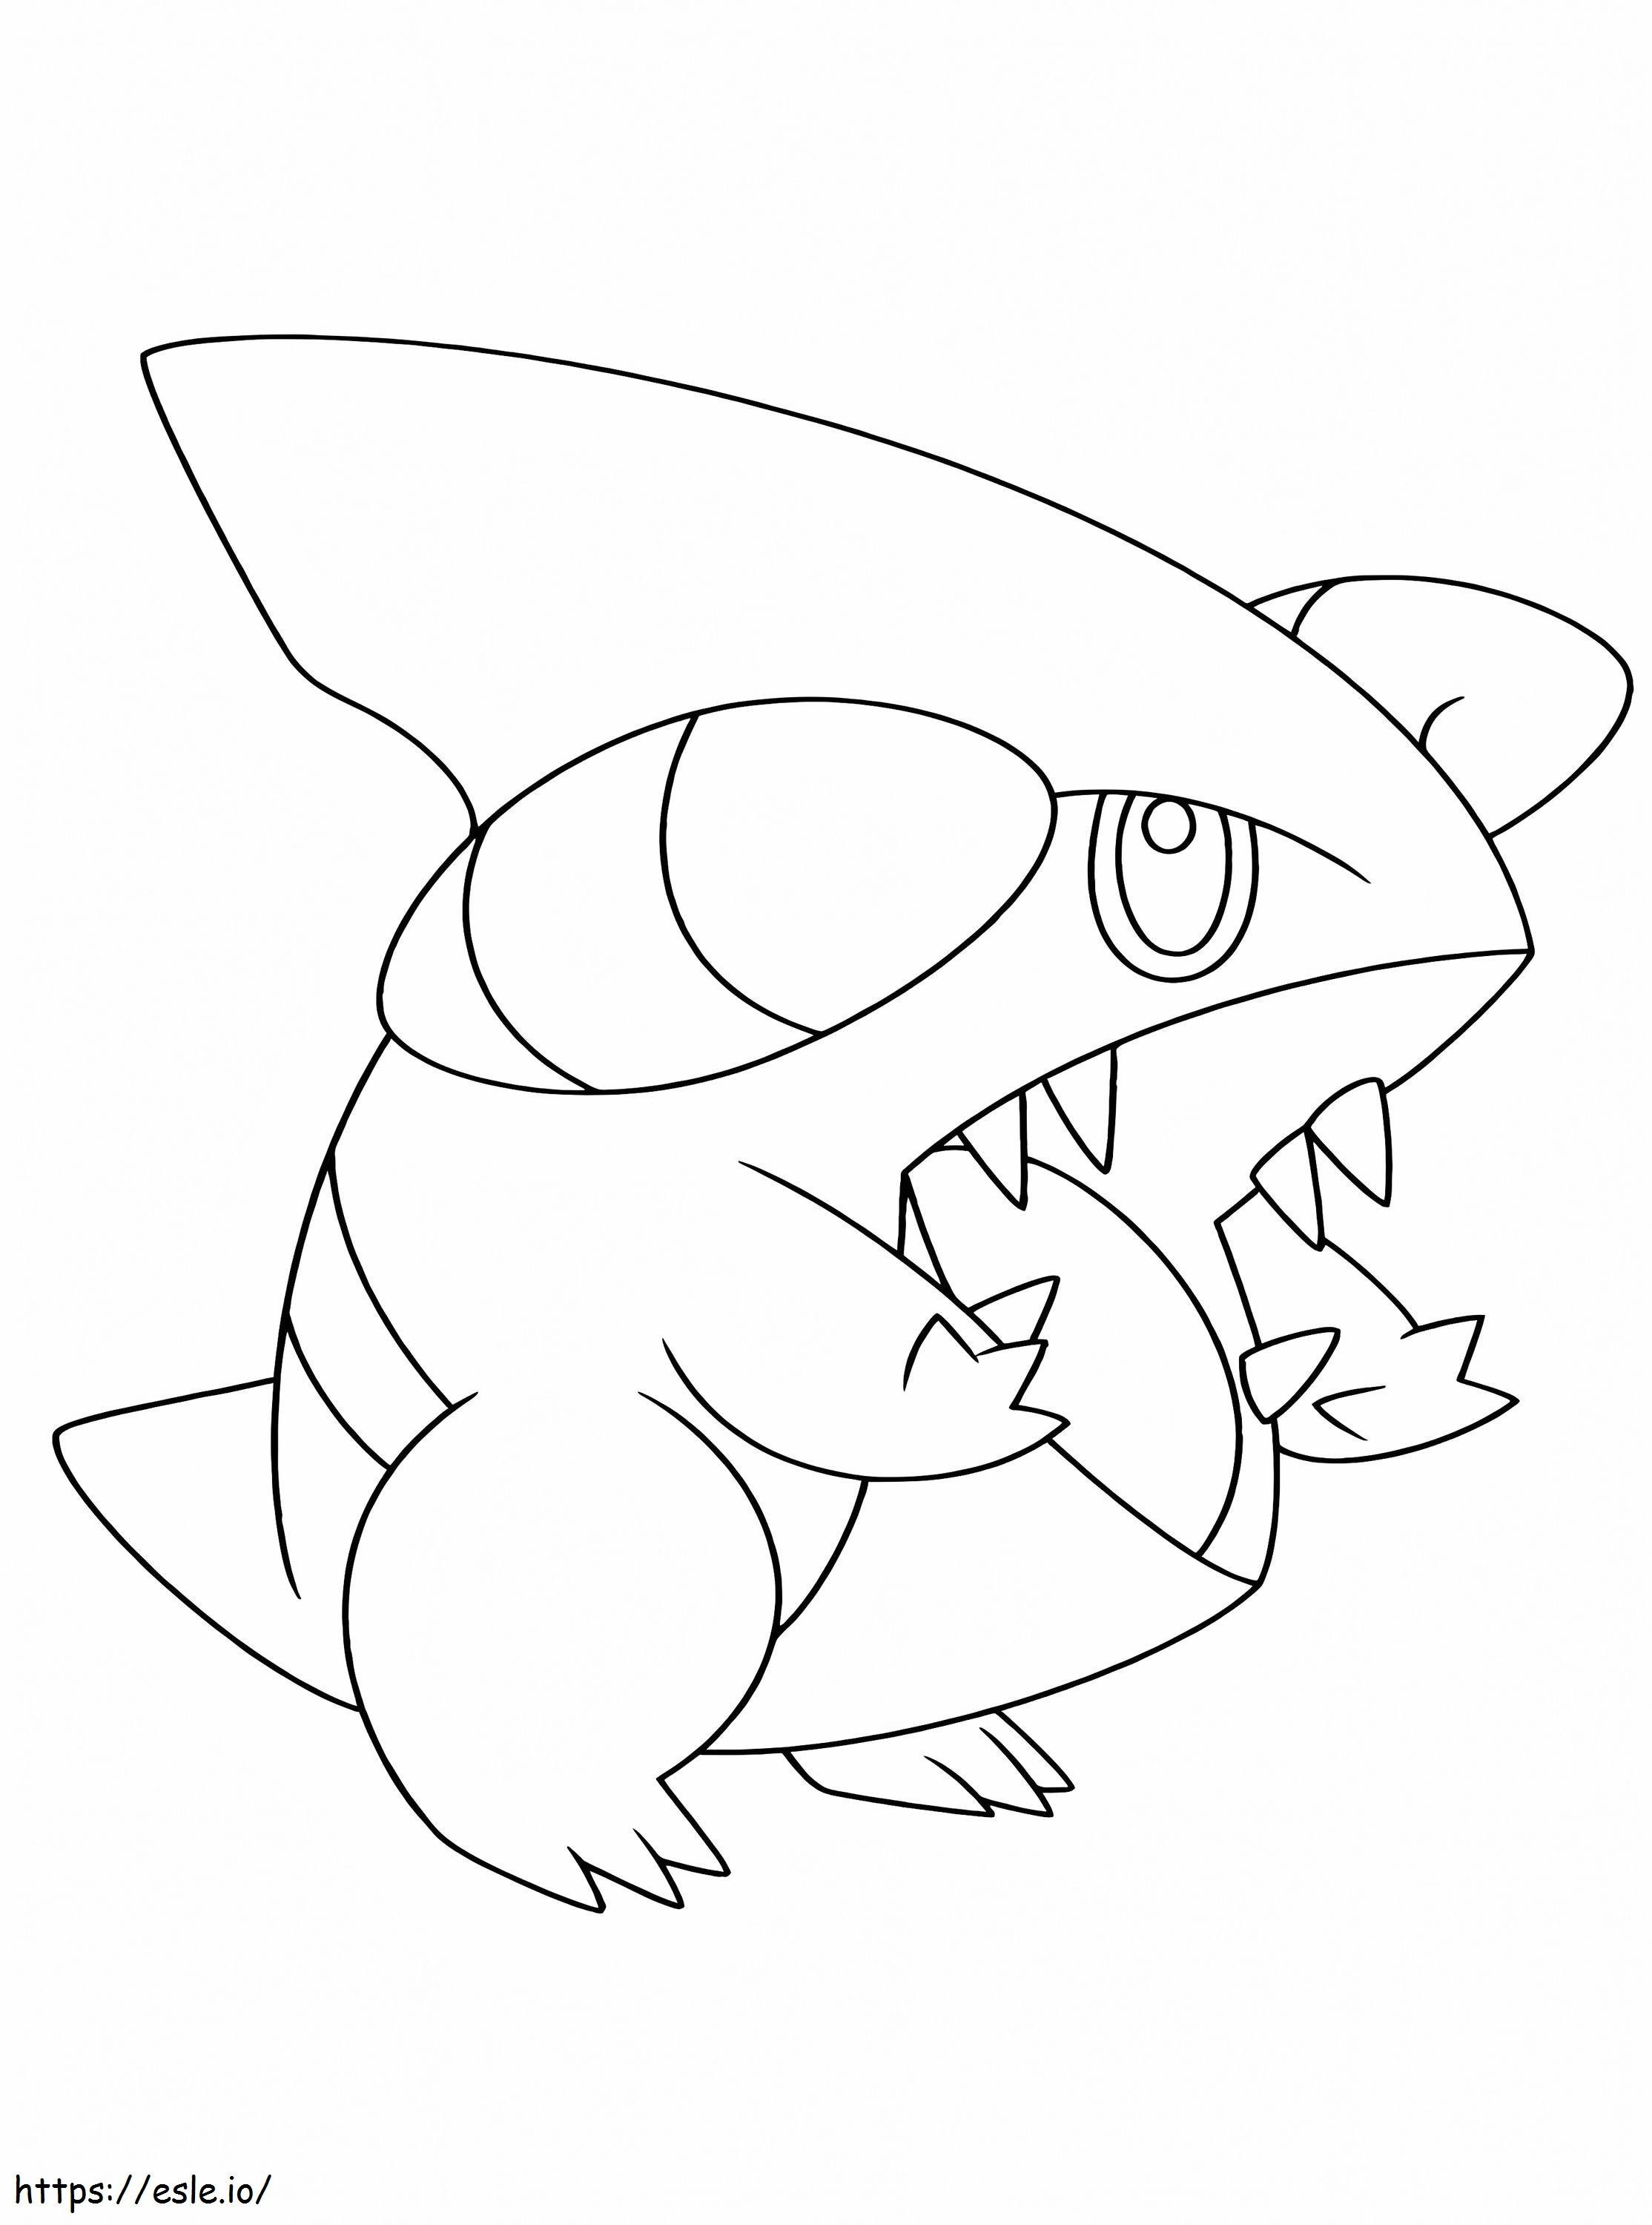 Gible Pokémon 1 para colorear